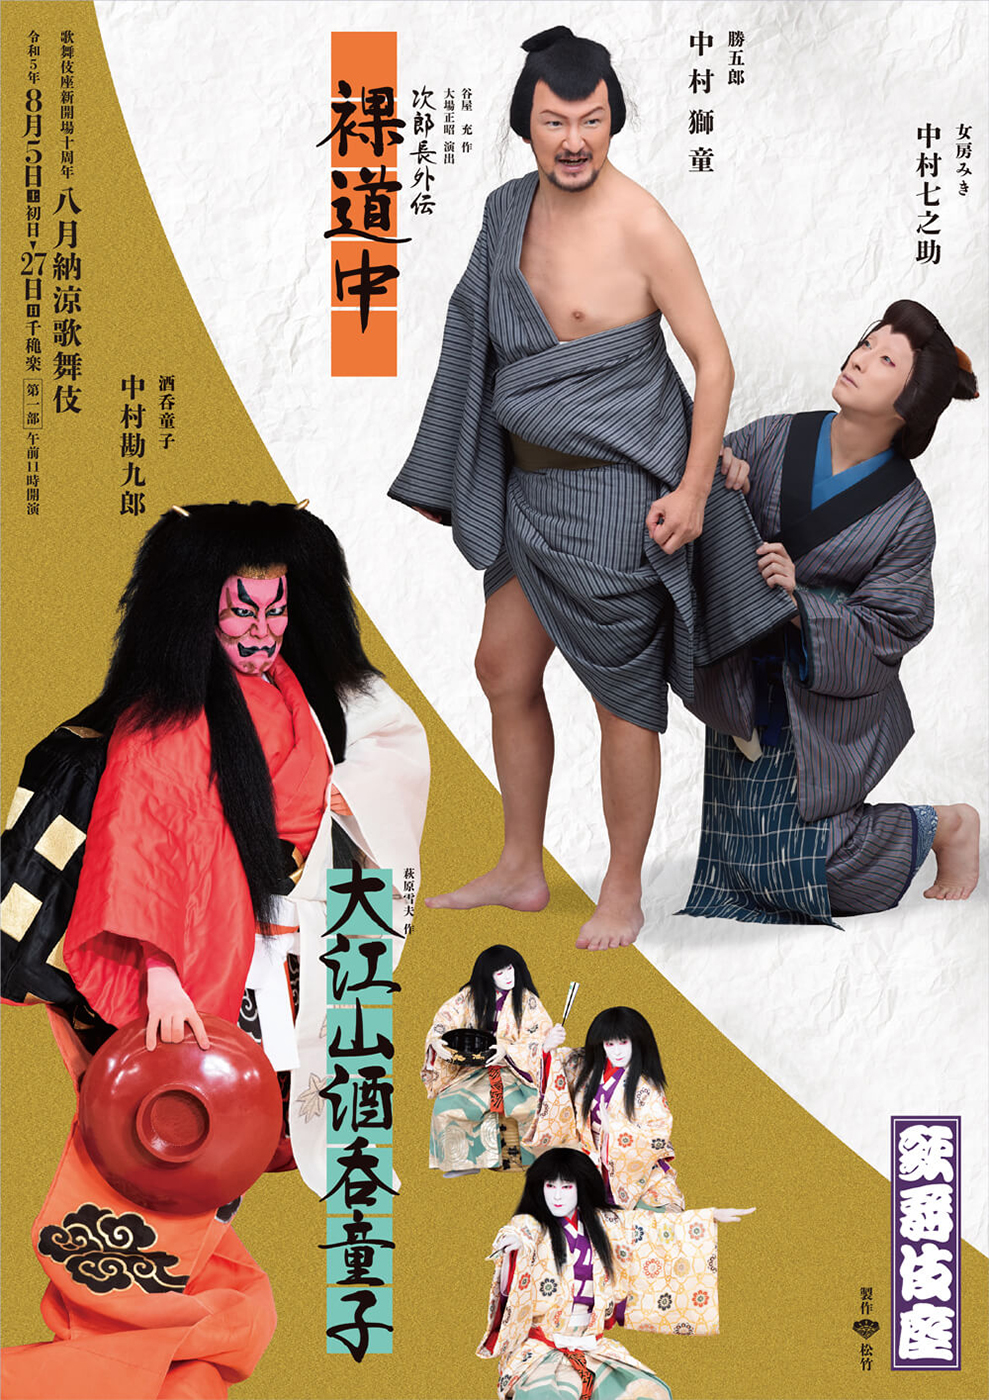 八月納涼歌舞伎 第一部『裸道中』『大江山酒呑童子』